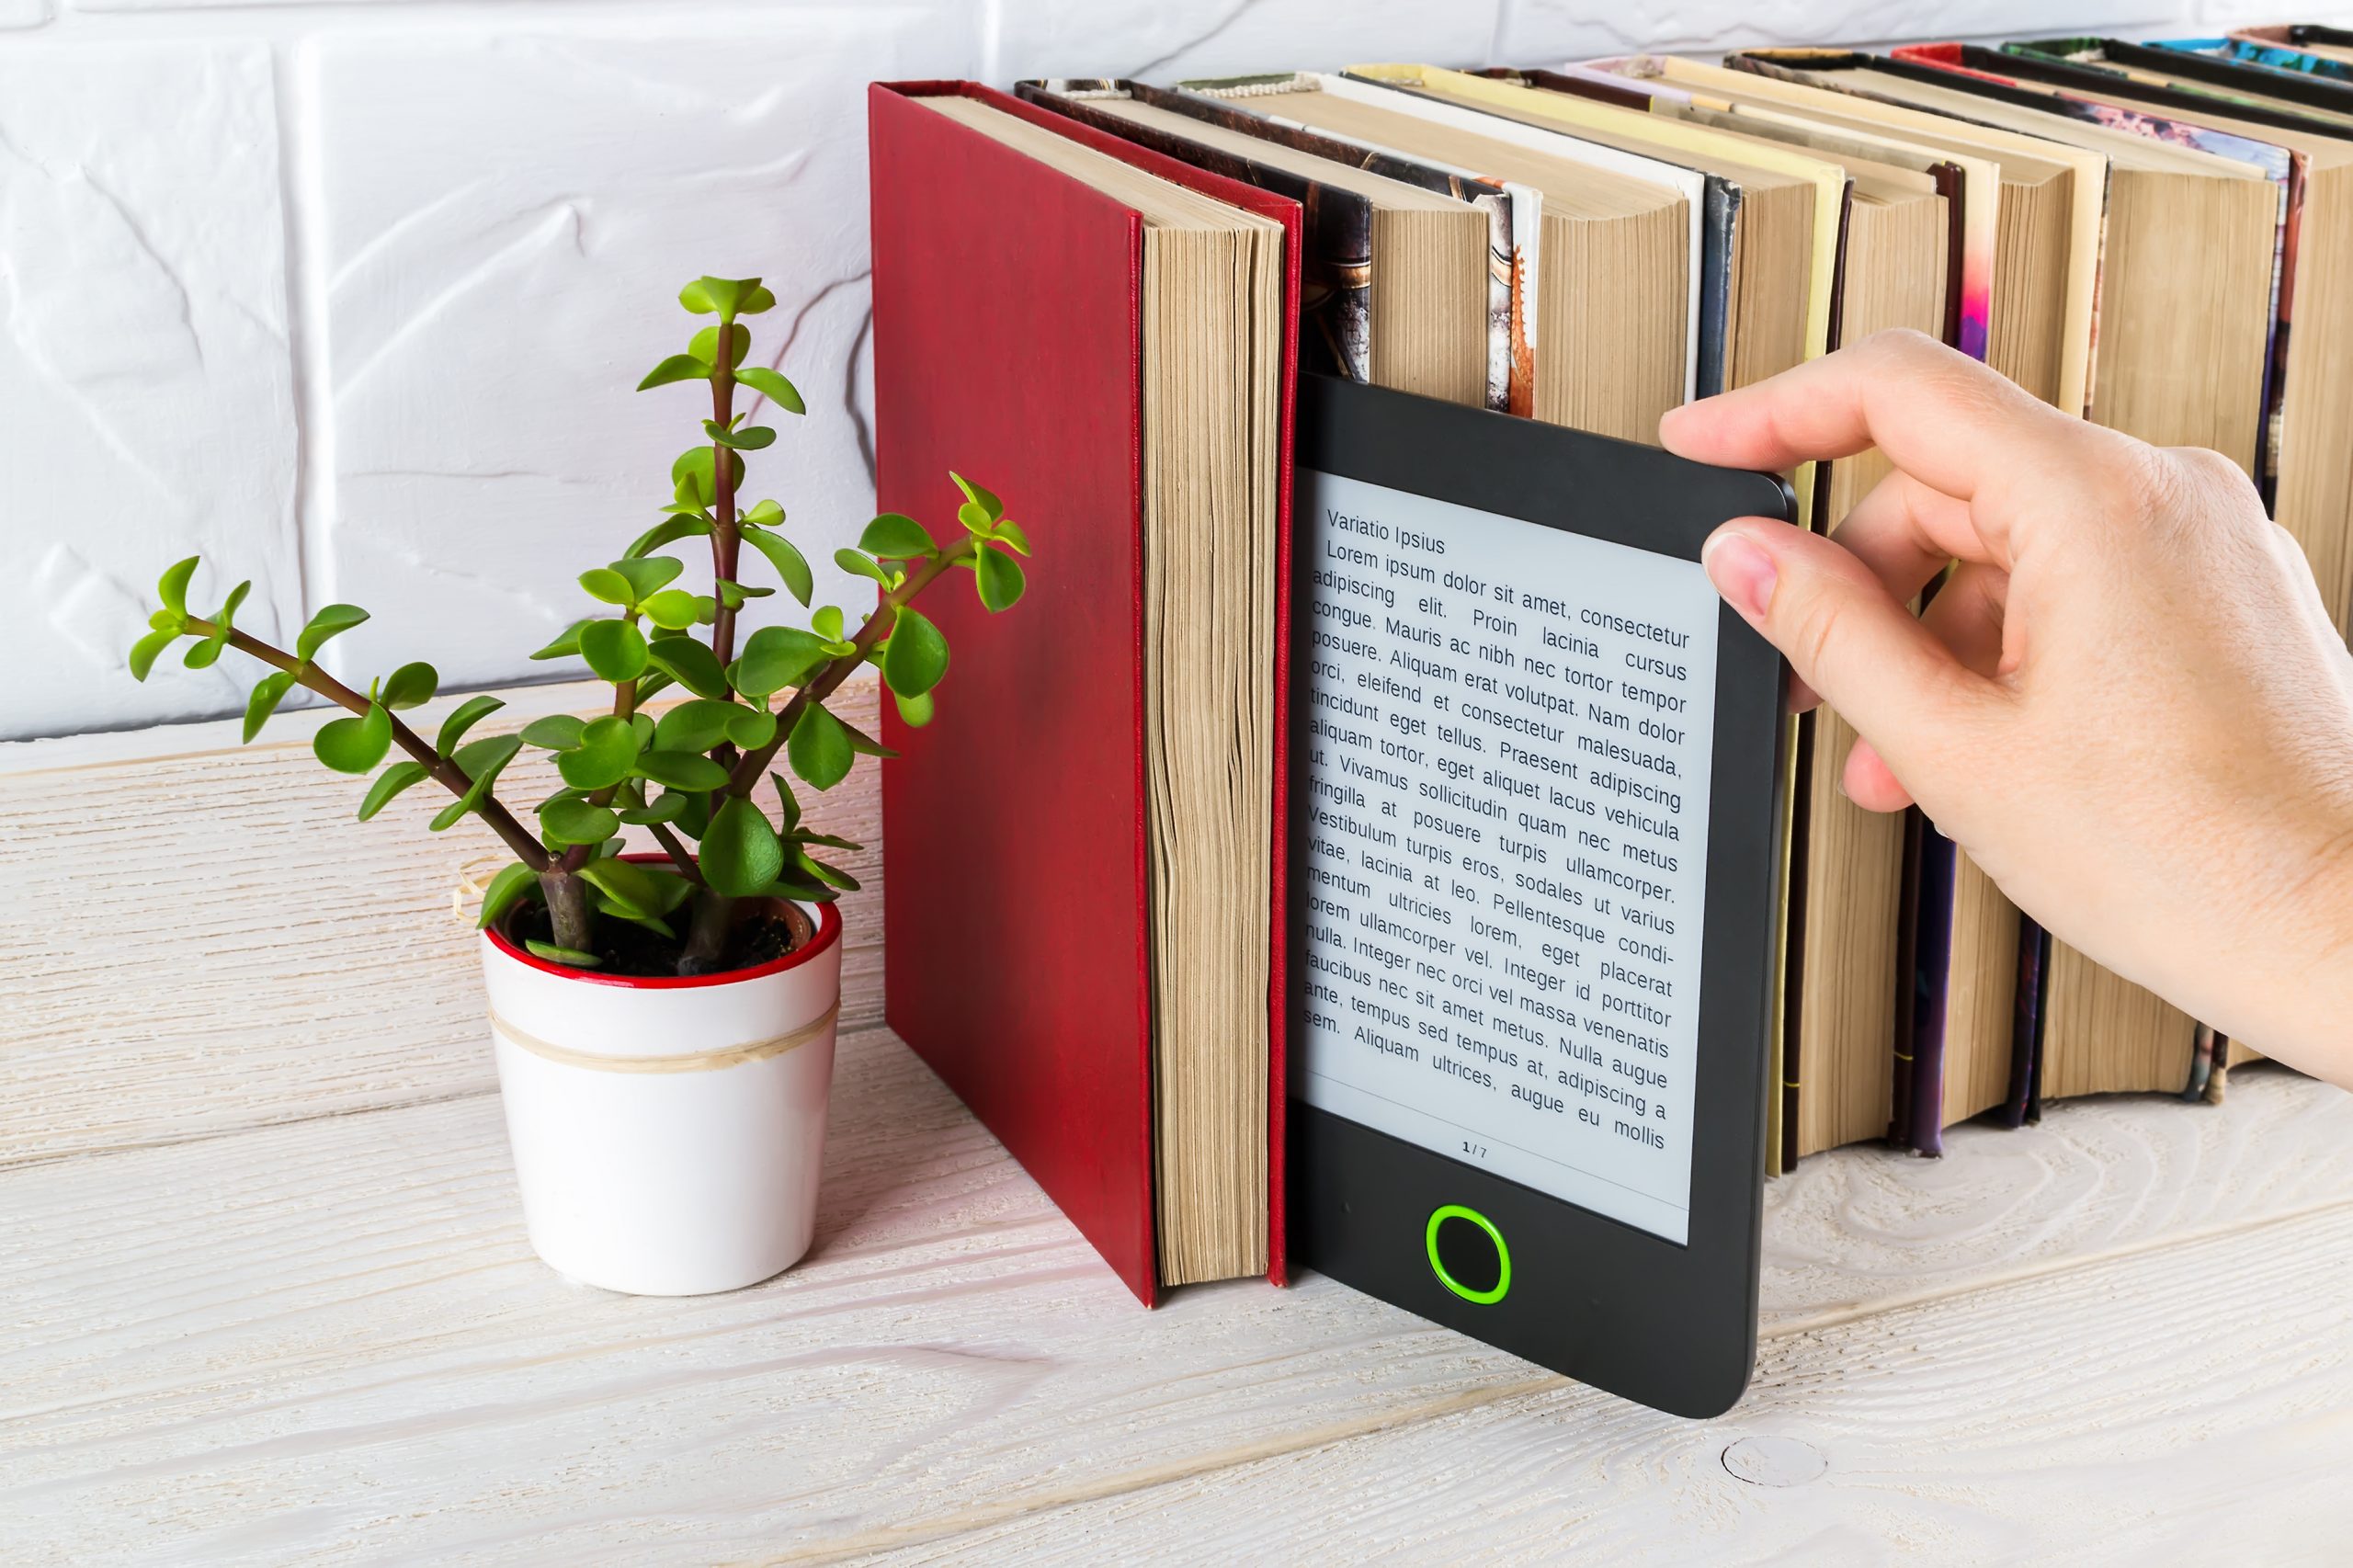 Hand nimmt einen E-Reader aus einem Regal mit gedruckten Büchern und kleinen Topfpflanzen.